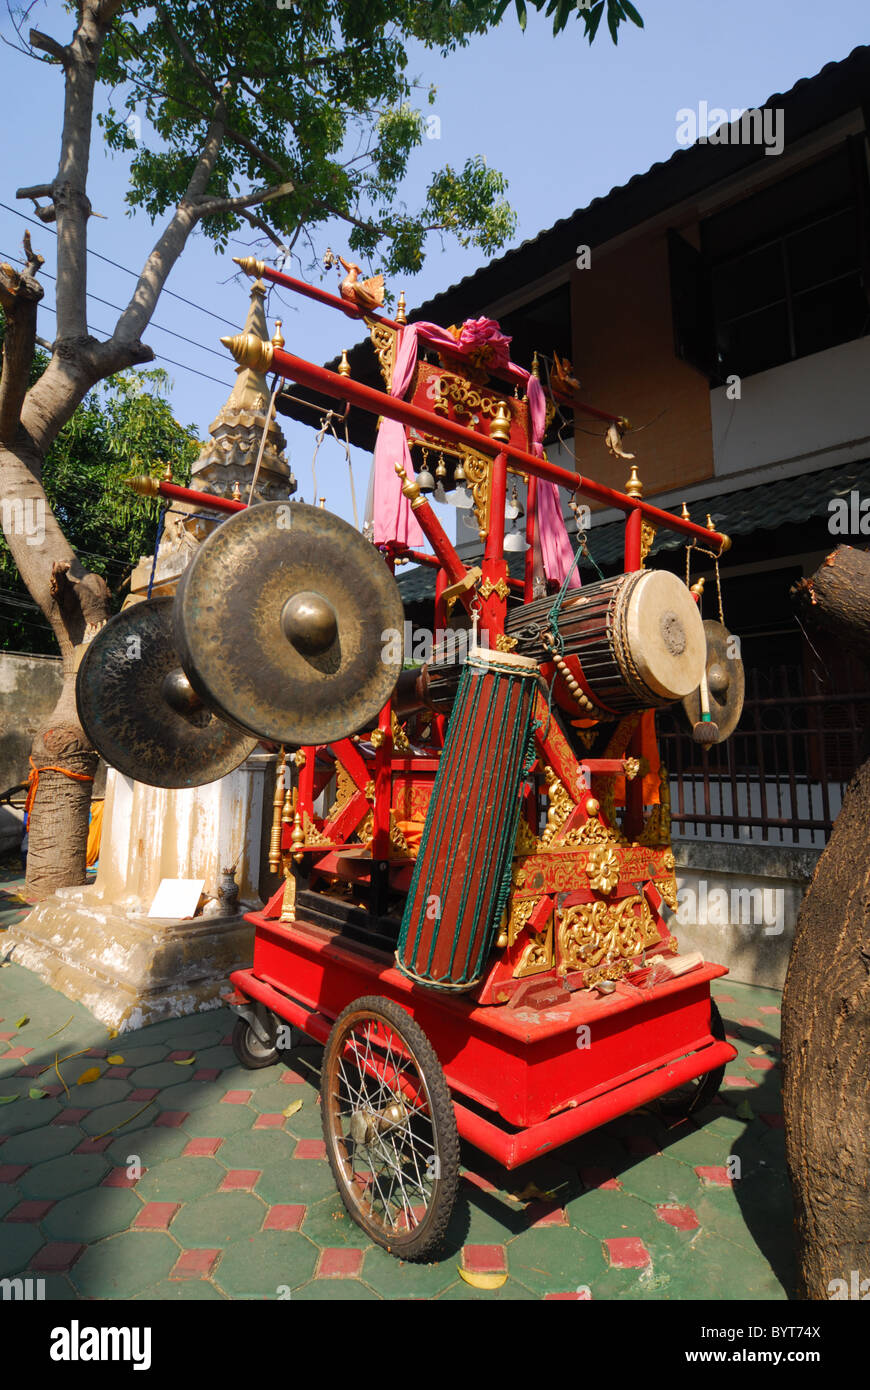 A drum wagon at Wat San Pac Temple at Chiang Mai, Thailand Stock Photo